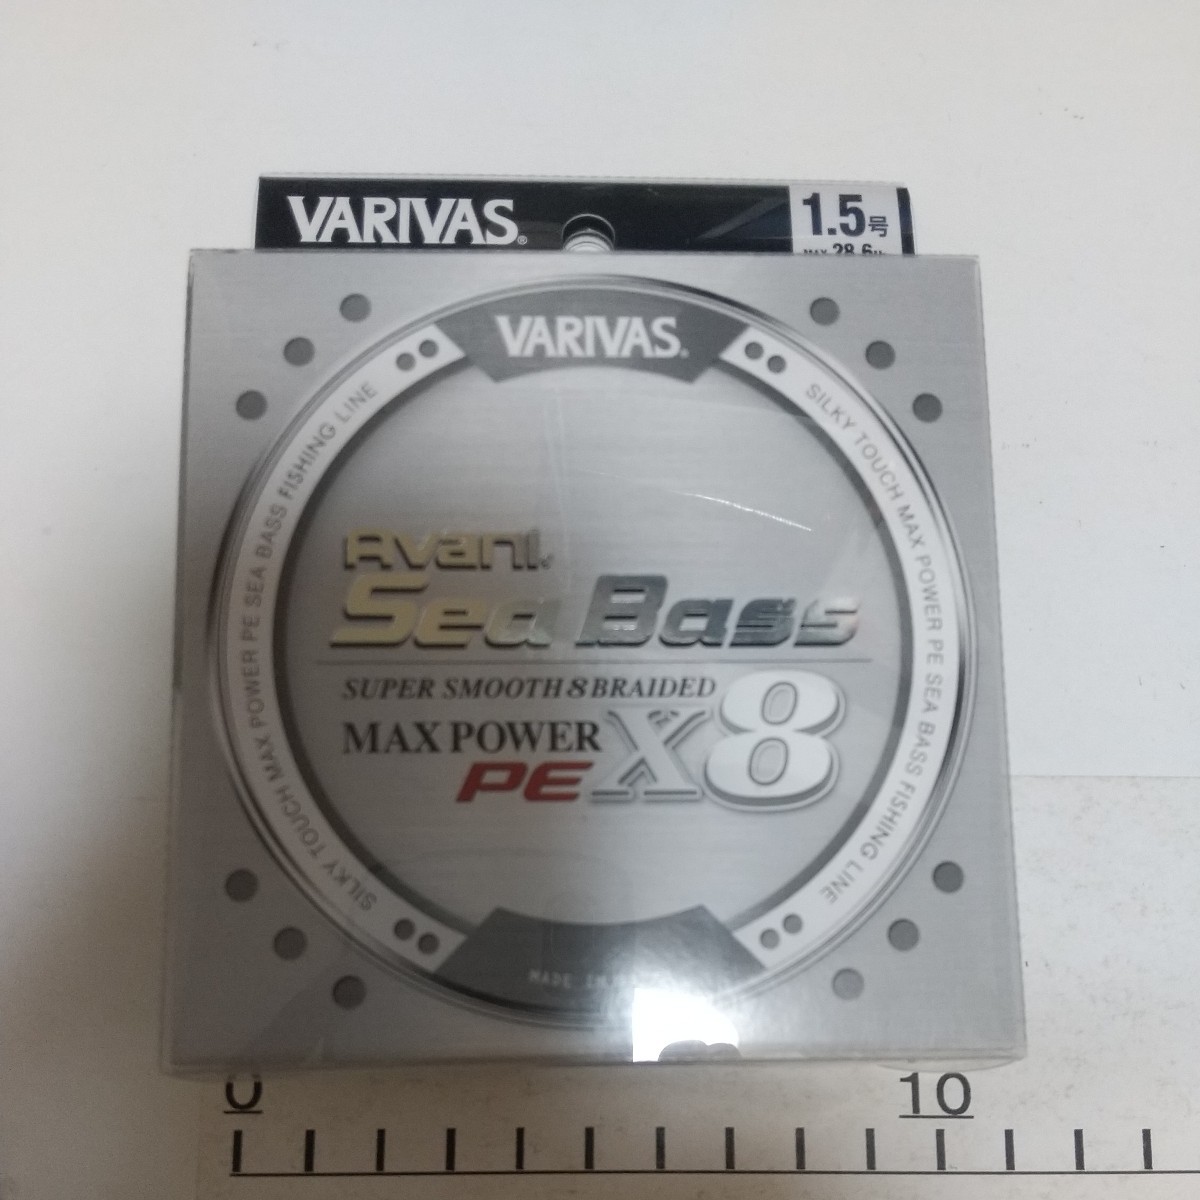 T80　VARIVAS アバニシーバスPE マックスパワーX8 1.5号 150m バリバス Avani_画像1